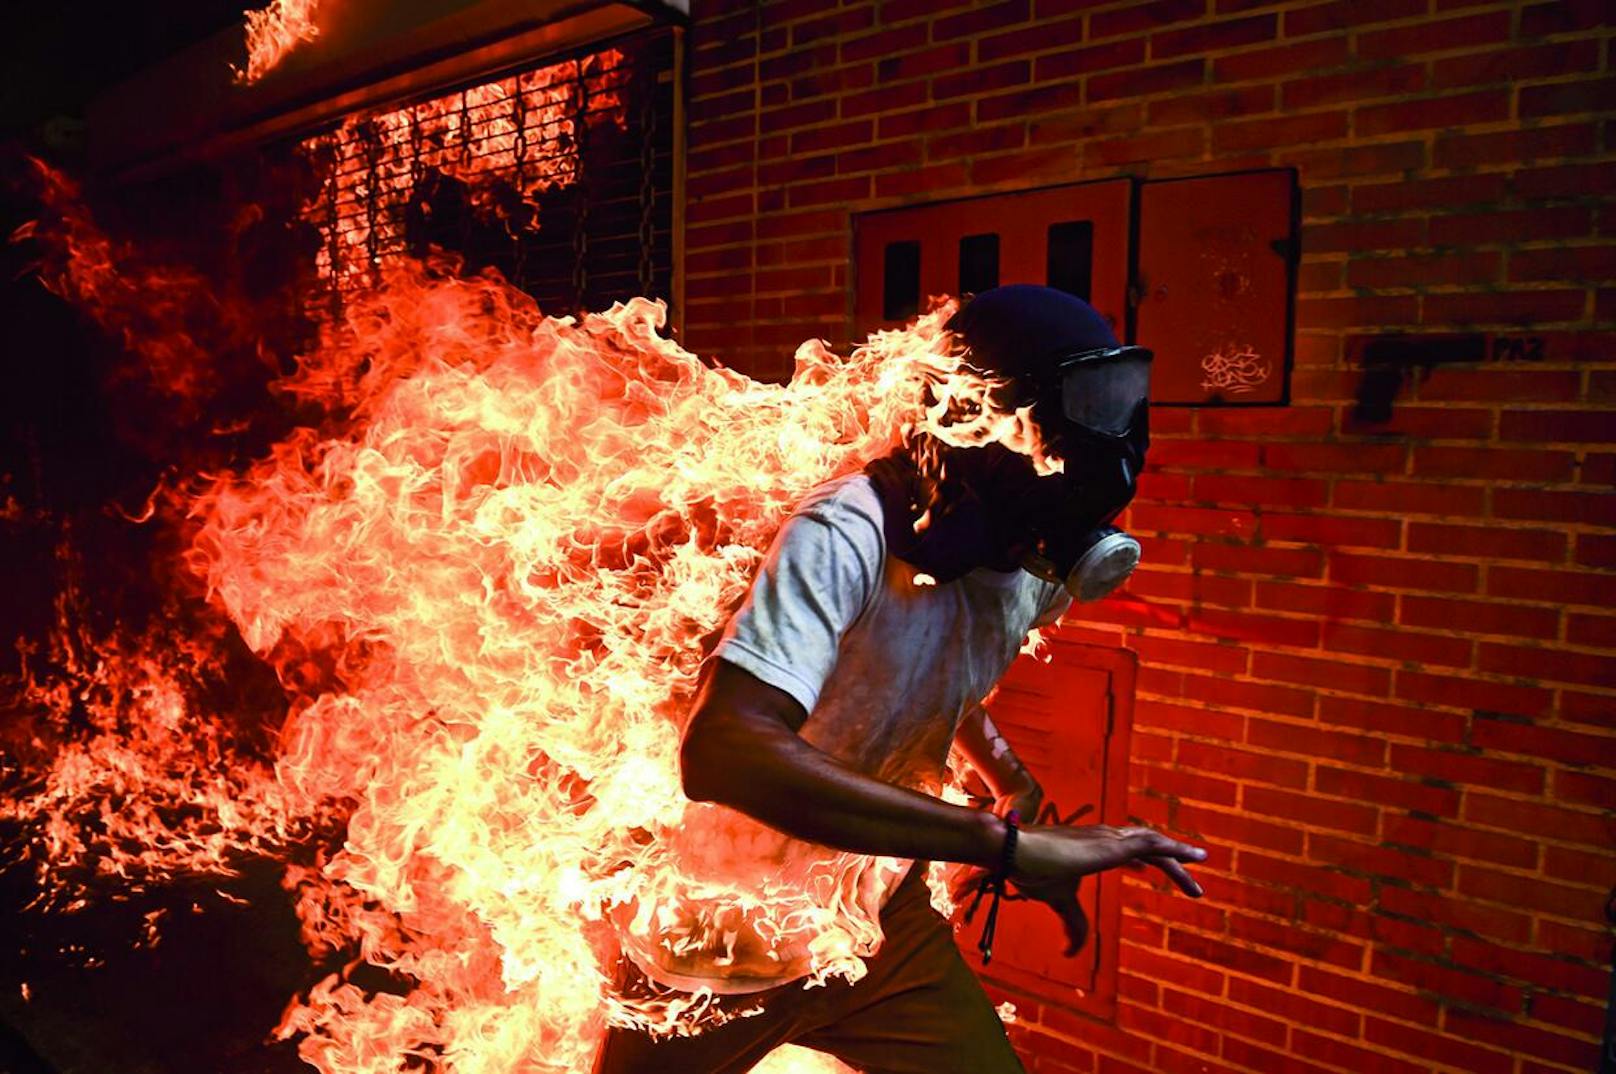 "World Press Photo des Jahres": 3. Mai 2017

Maduro wollte das von der Opposition dominierte Parlament durch eine verfassungsgebende Versammlung ersetzen und sich damit die gesetzgeberischen Befugnisse faktisch selbst sichern. Oppositionsführer riefen zu Massenprotesten auf, um vorgezogene Präsidentschaftswahlen zu verlangen. Am 3. Mai kam es zu Ausschreitungen zwischen Demonstranten und der Nationalgarde. Die Demonstranten, viele mit Kapuzen, Masken oder Gasmasken, entzündeten Feuer und warfen mit Steinen. Der 28- jährige José Victor Salazar Balza geriet in Brand, als der Tank eine Motorrads explodierte. Er überlebte mit Verbrennungen ersten und zweiten Grades.